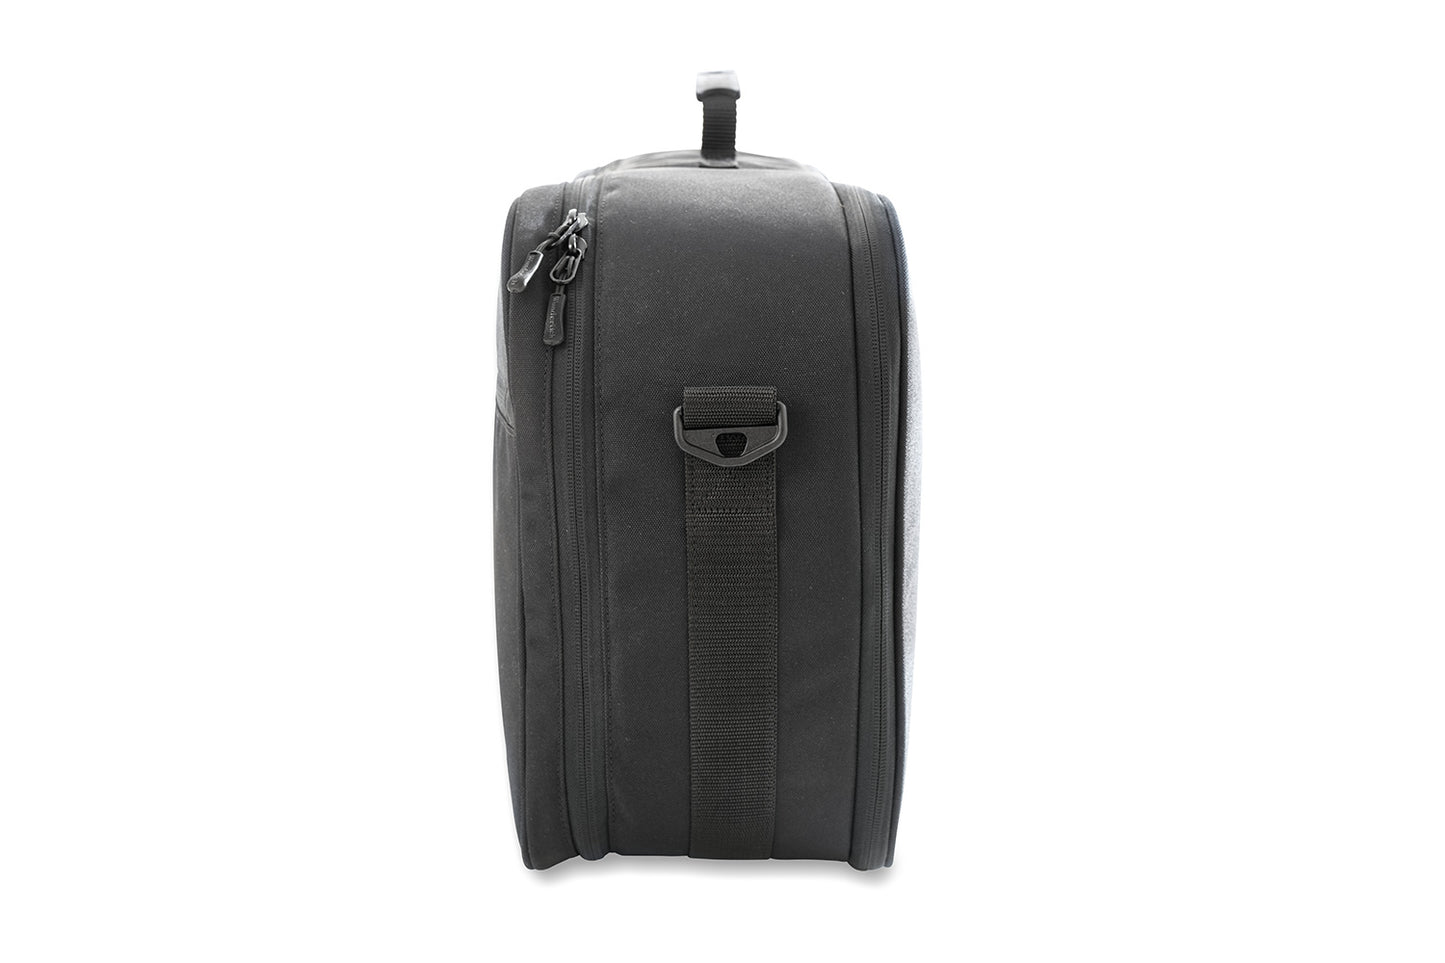 Wunderlich top case bag inner pocket - black